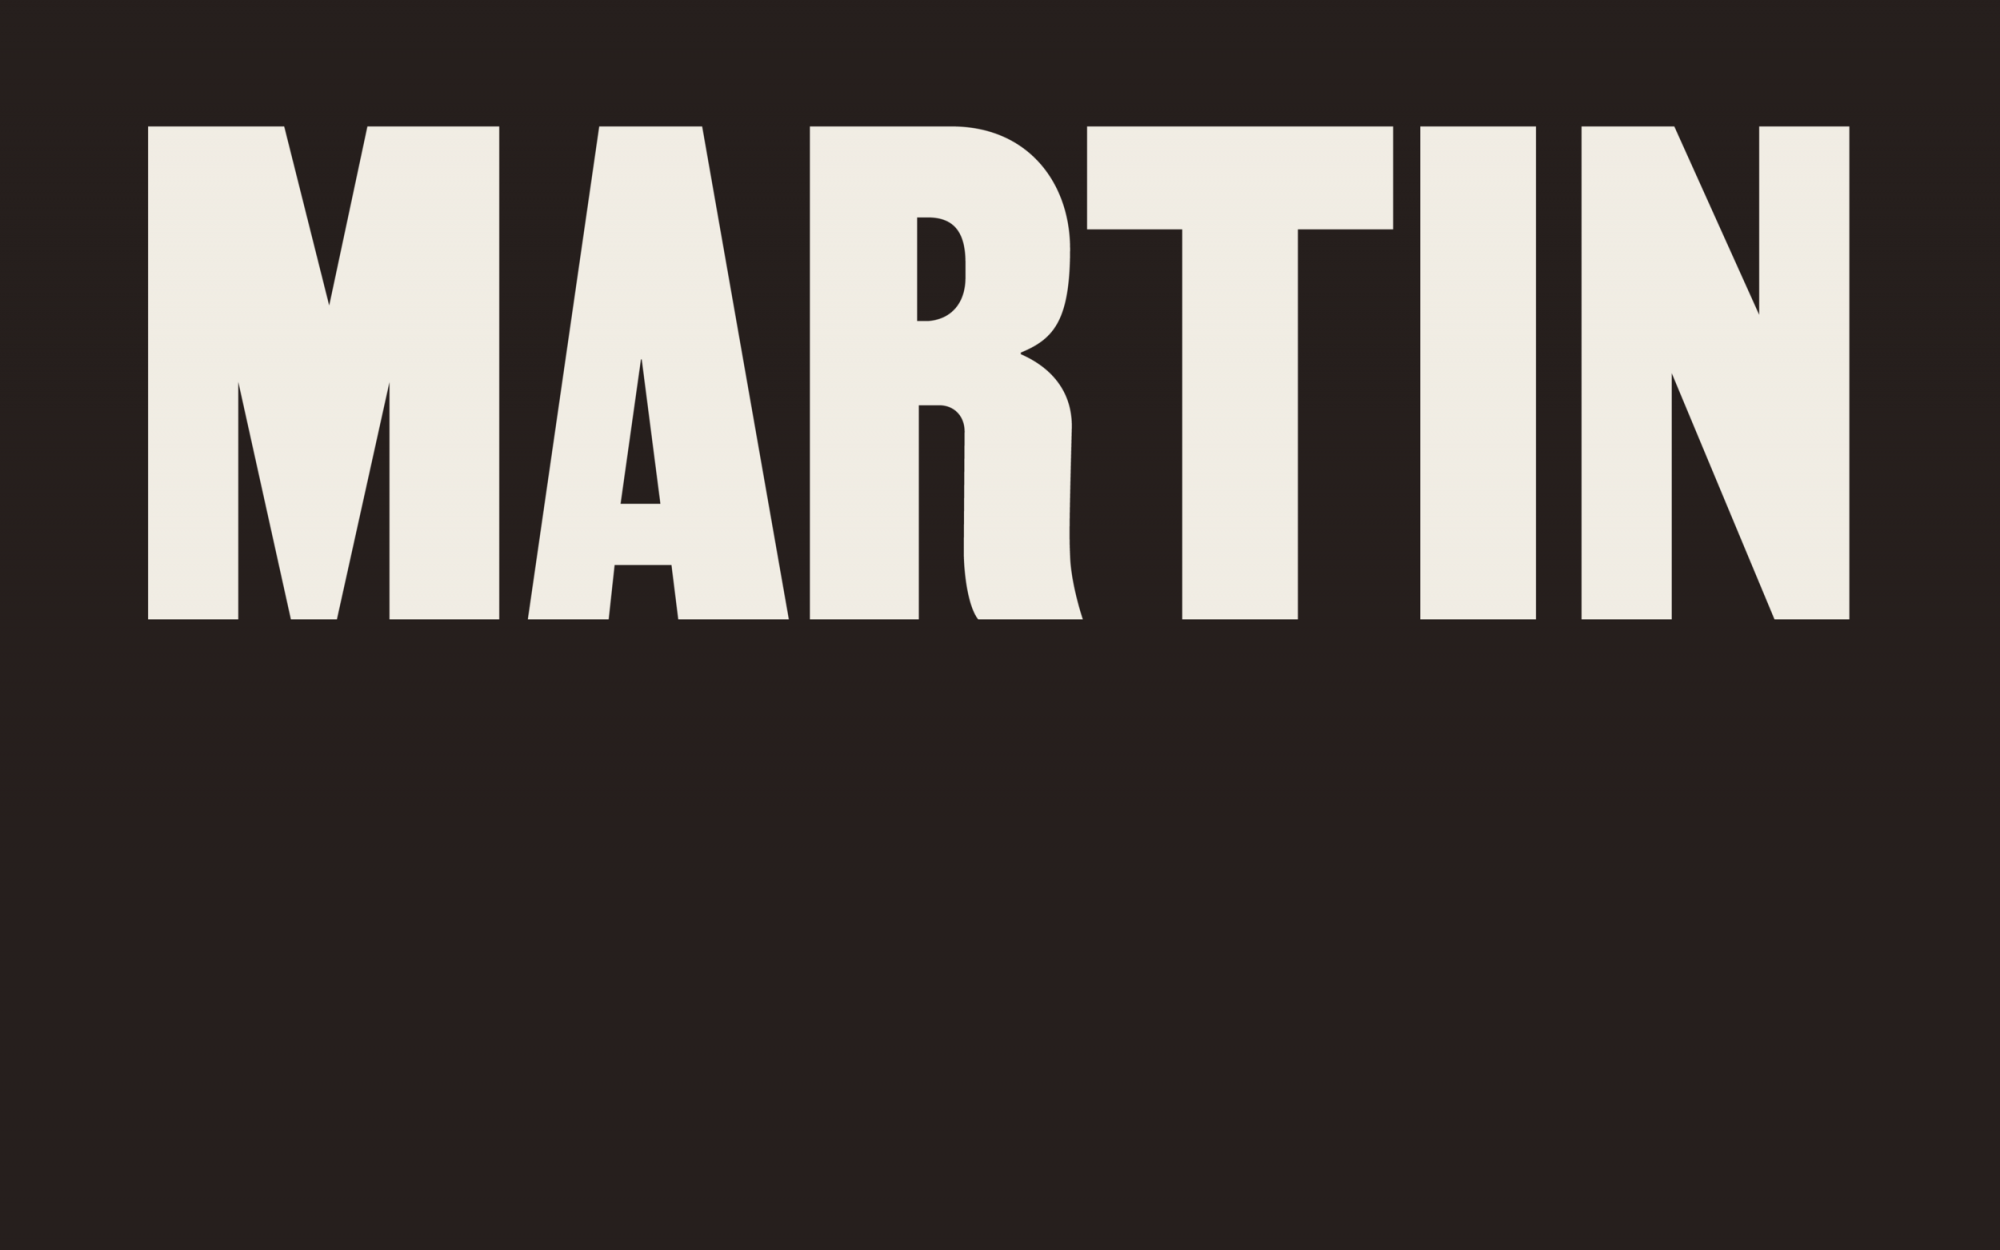 Das Wort "Martin" in weißen Großbuchstaben auf braunem Hintergrund